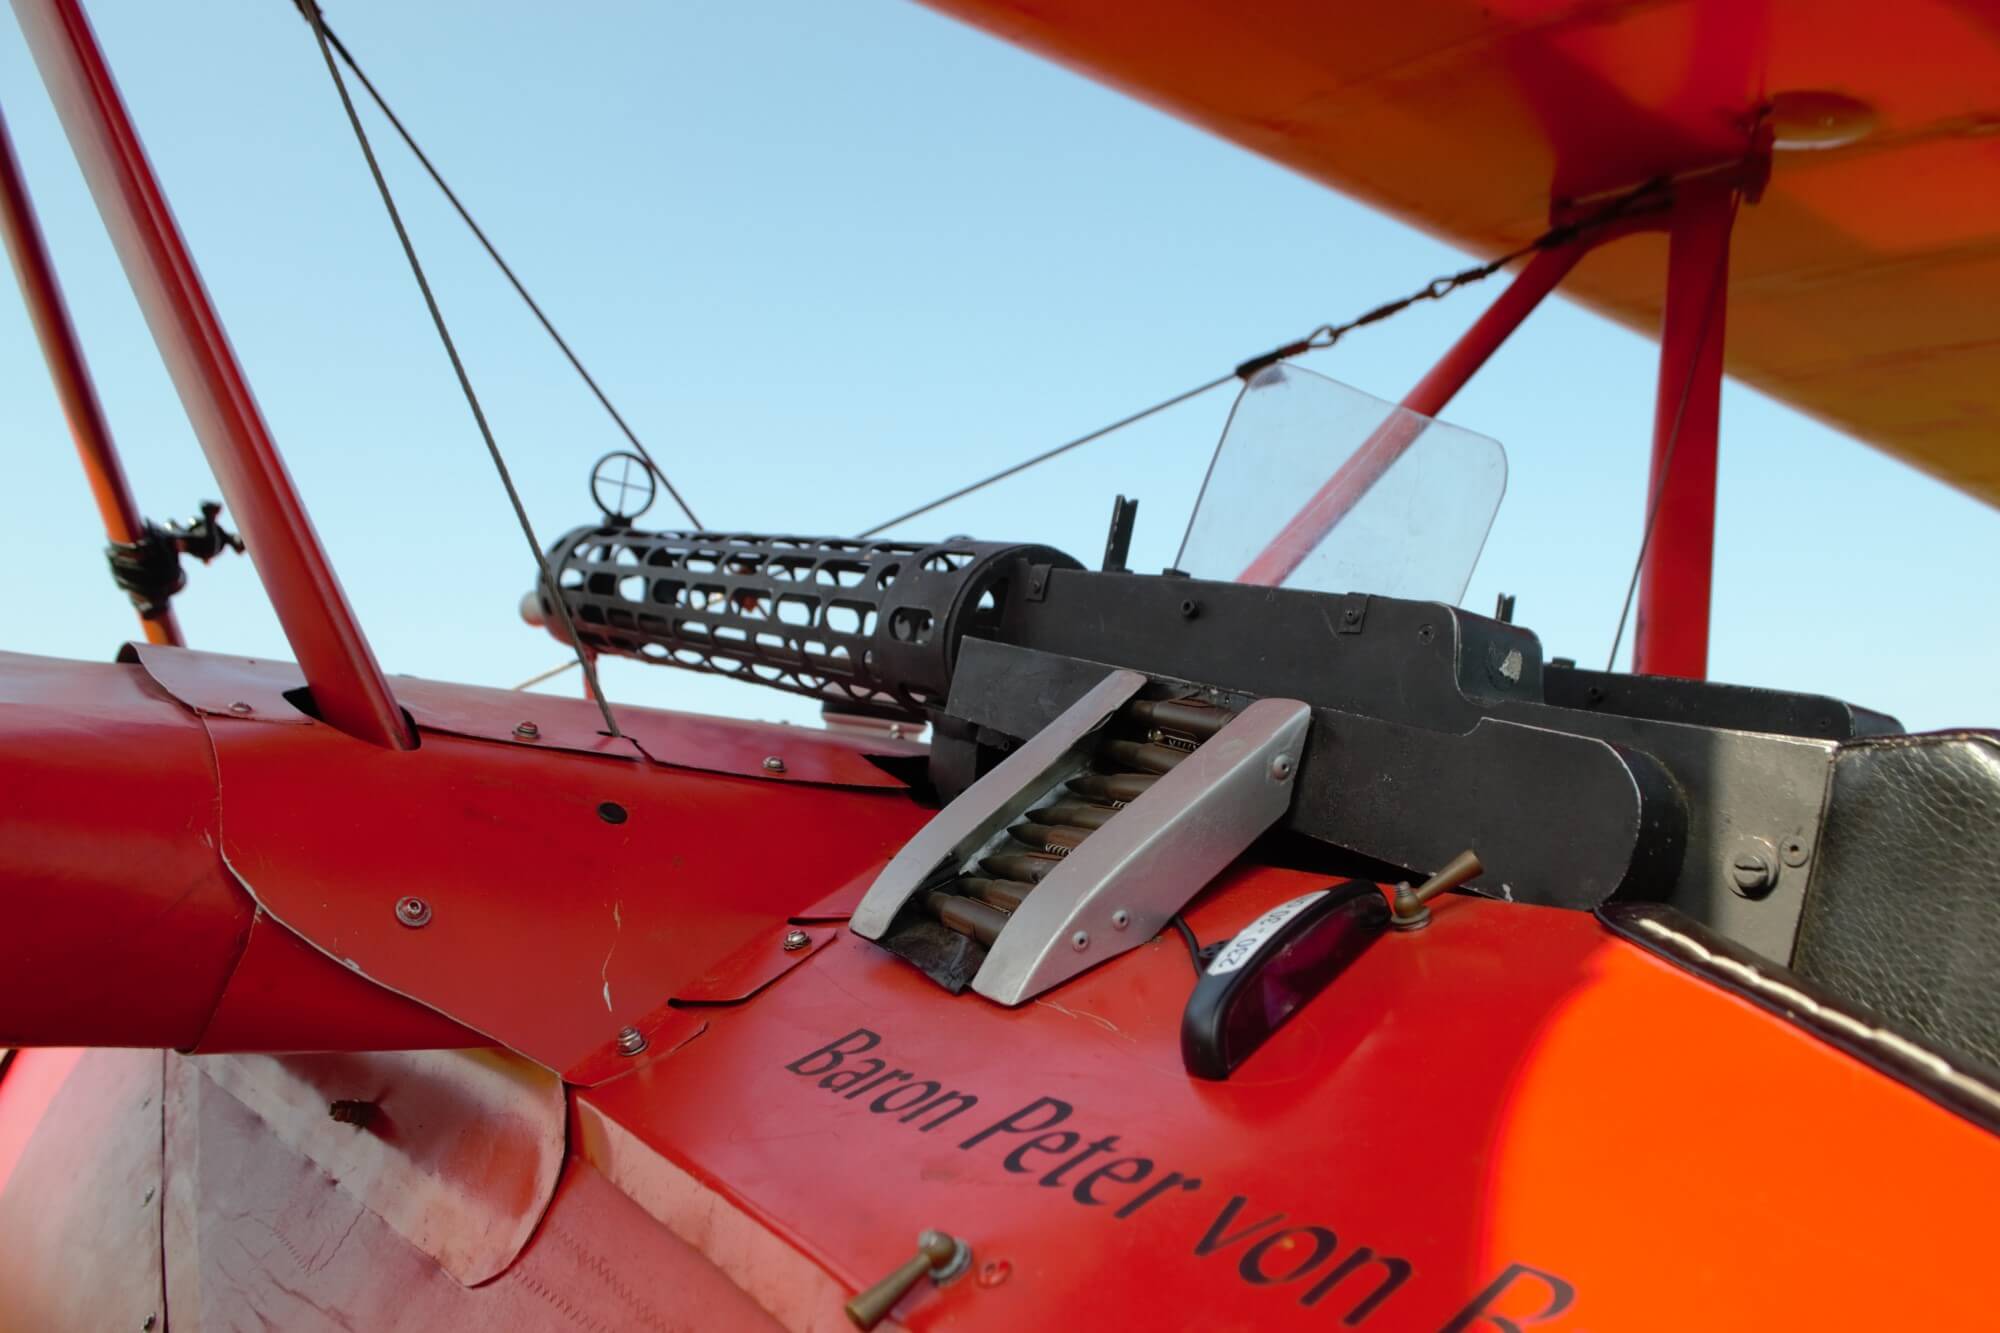 The gun and bullet seen on Peter Brueggemann's replica triplane